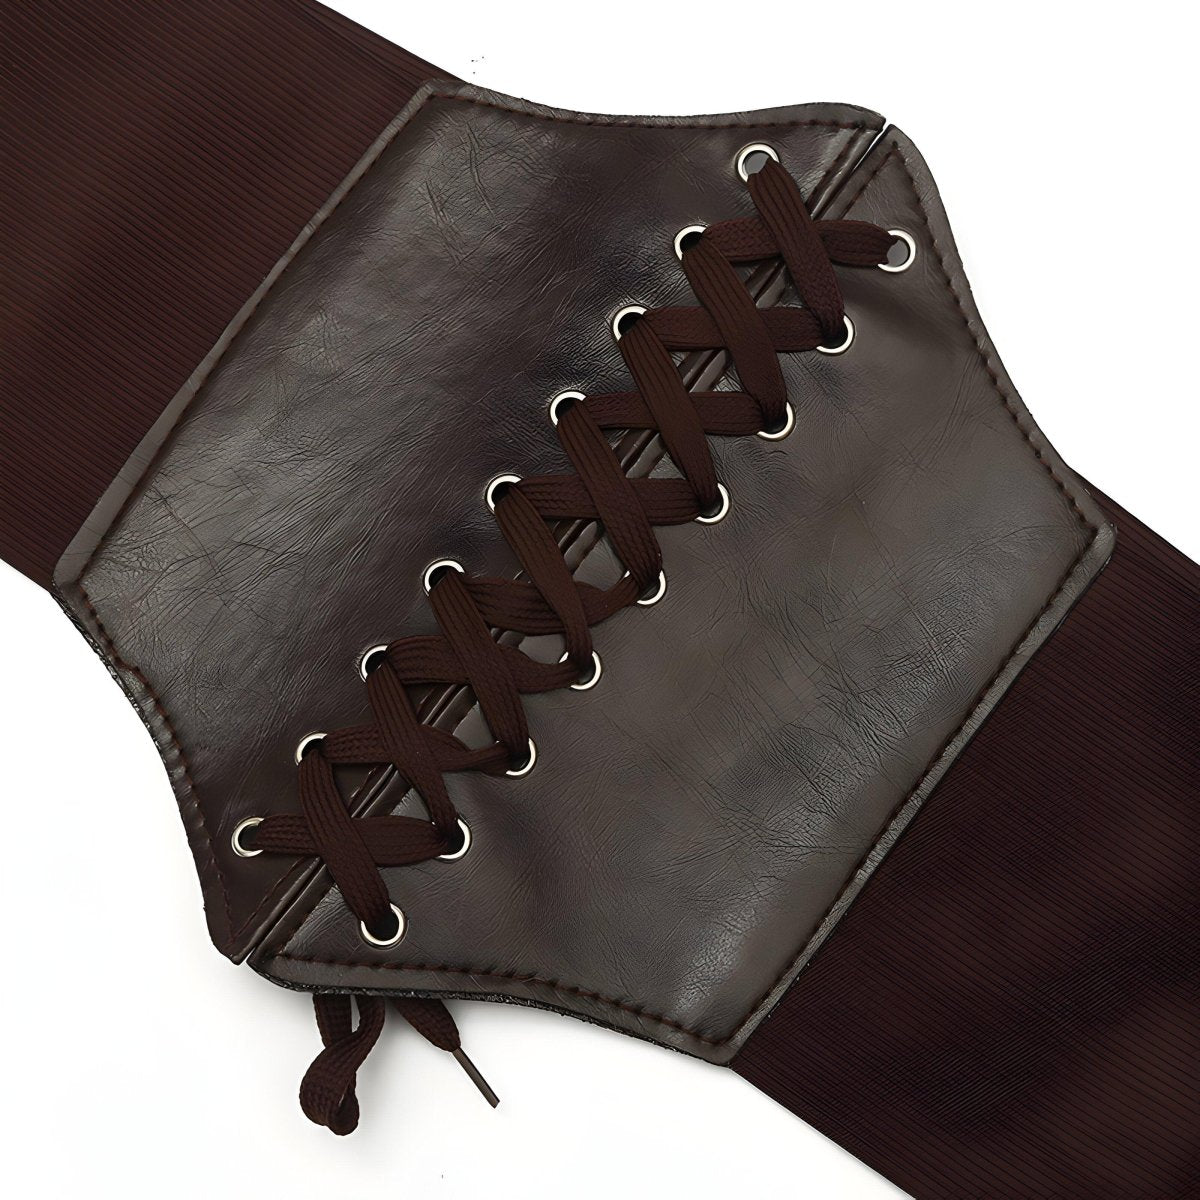 Ceinture corset unie à lacet, modèle Kayla - La Boutique de la Ceinture